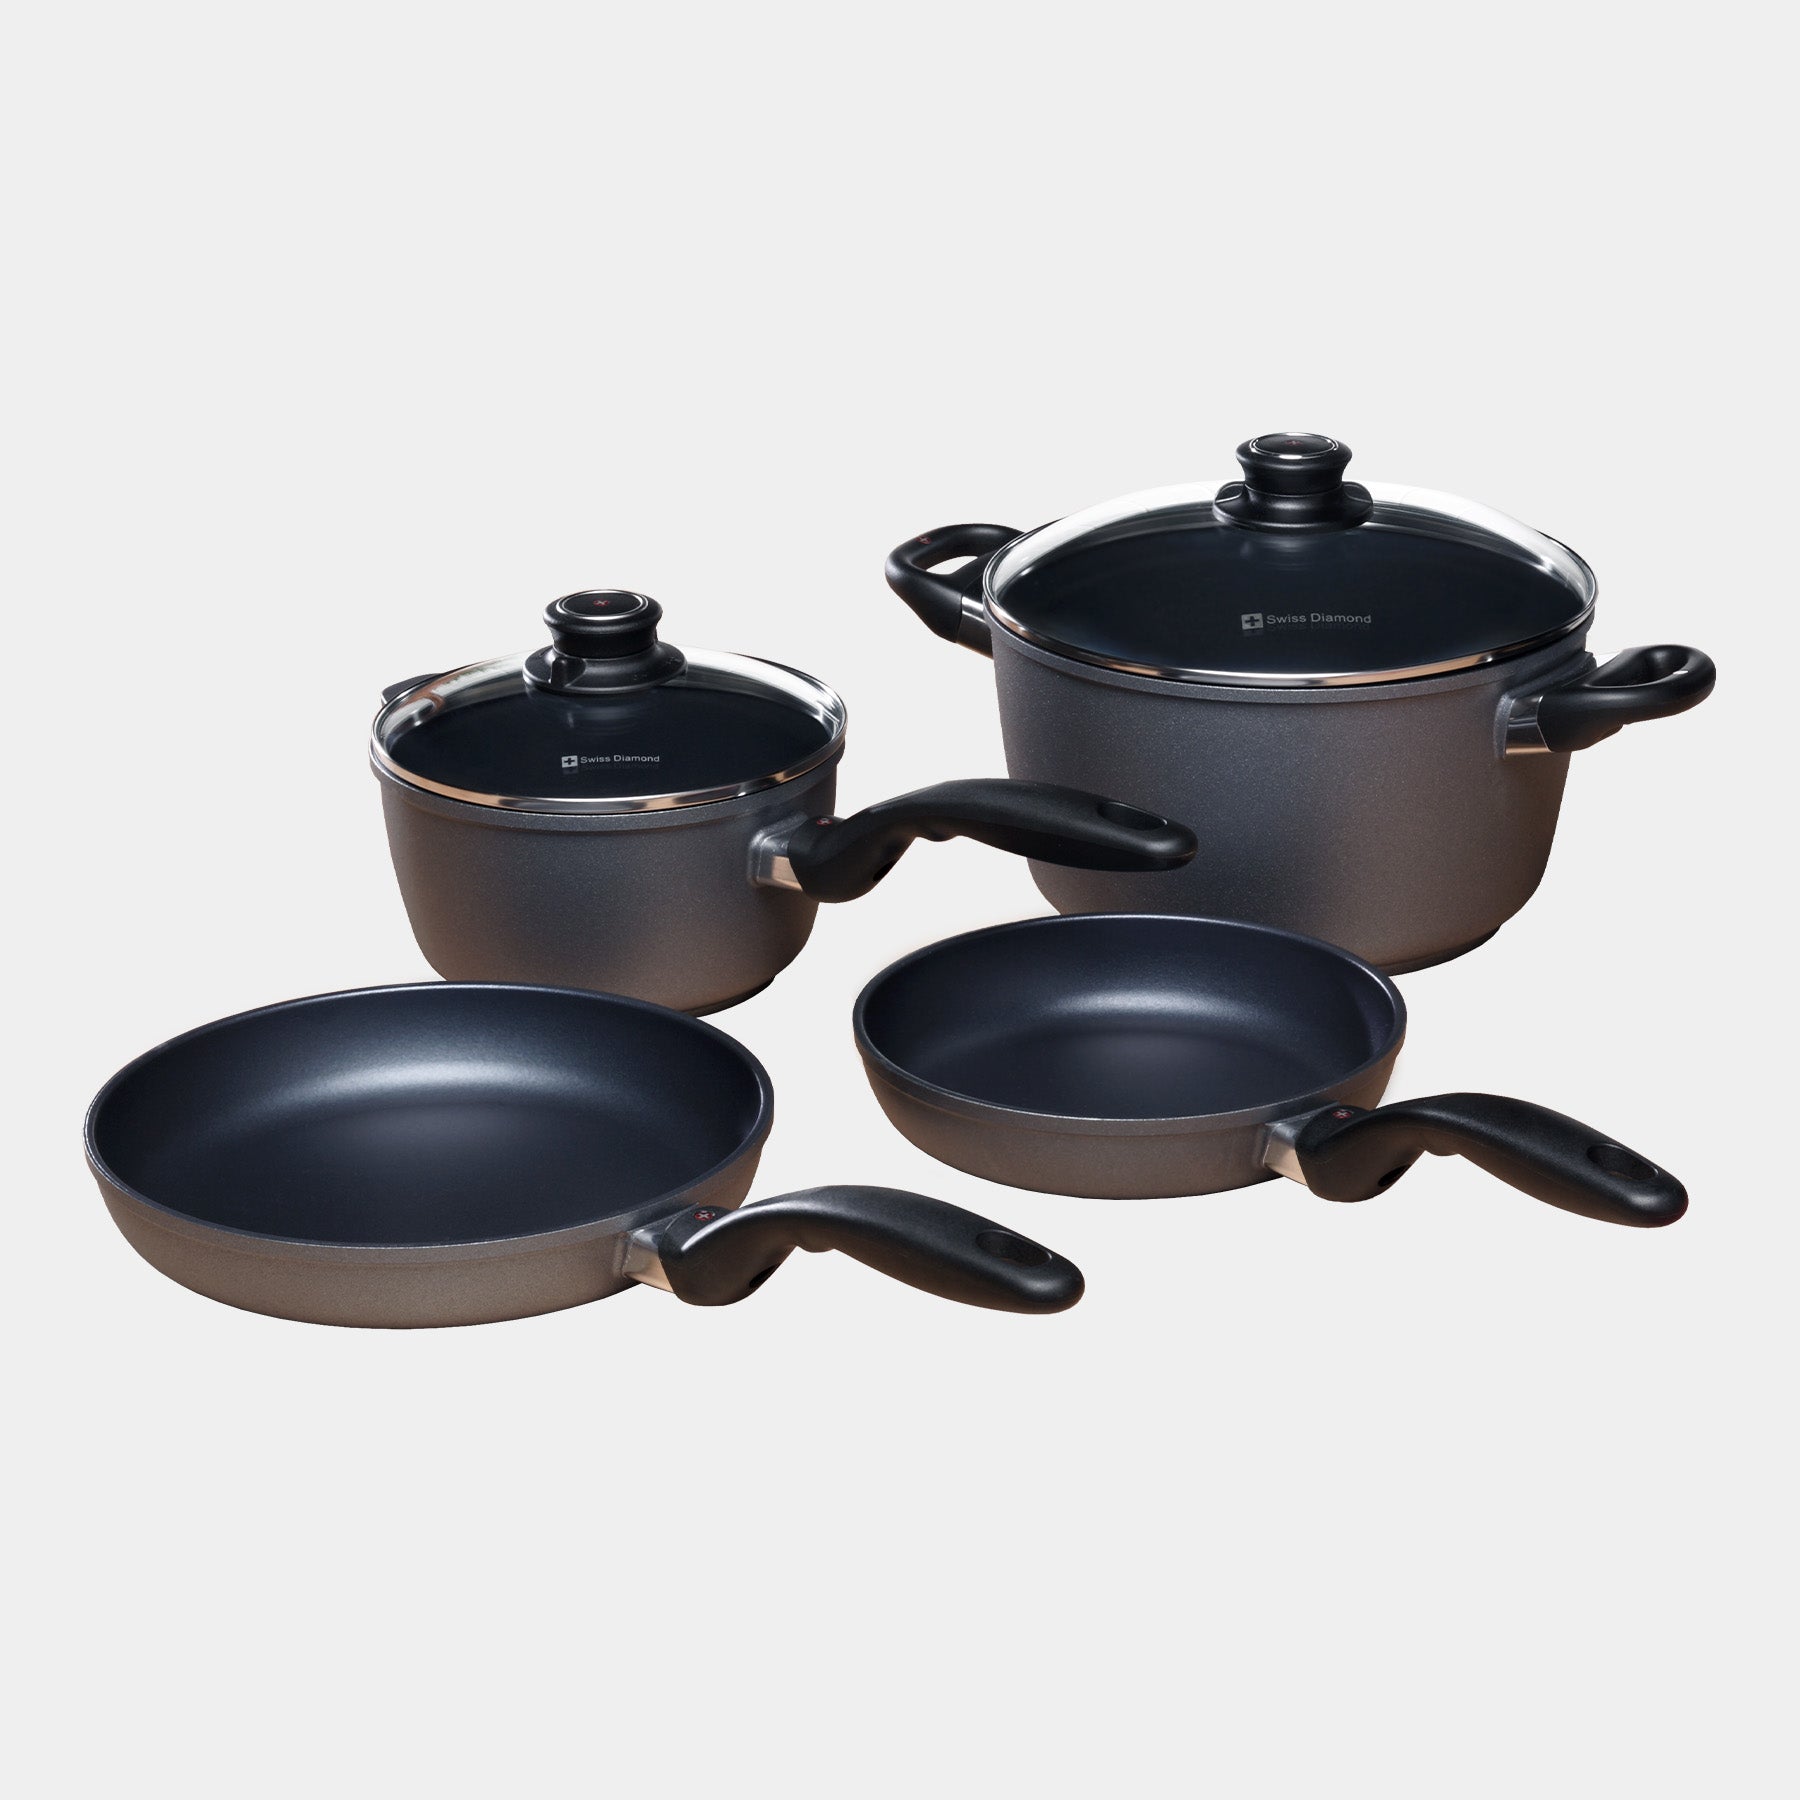 HD Nonstick 6-Piece Set - Newlywed Kitchen Kit Includes: 8" & 9.5" Fry Pans + 2.2 qt Saucepan with Lid + 5.5 qt Soup Pot with Lid